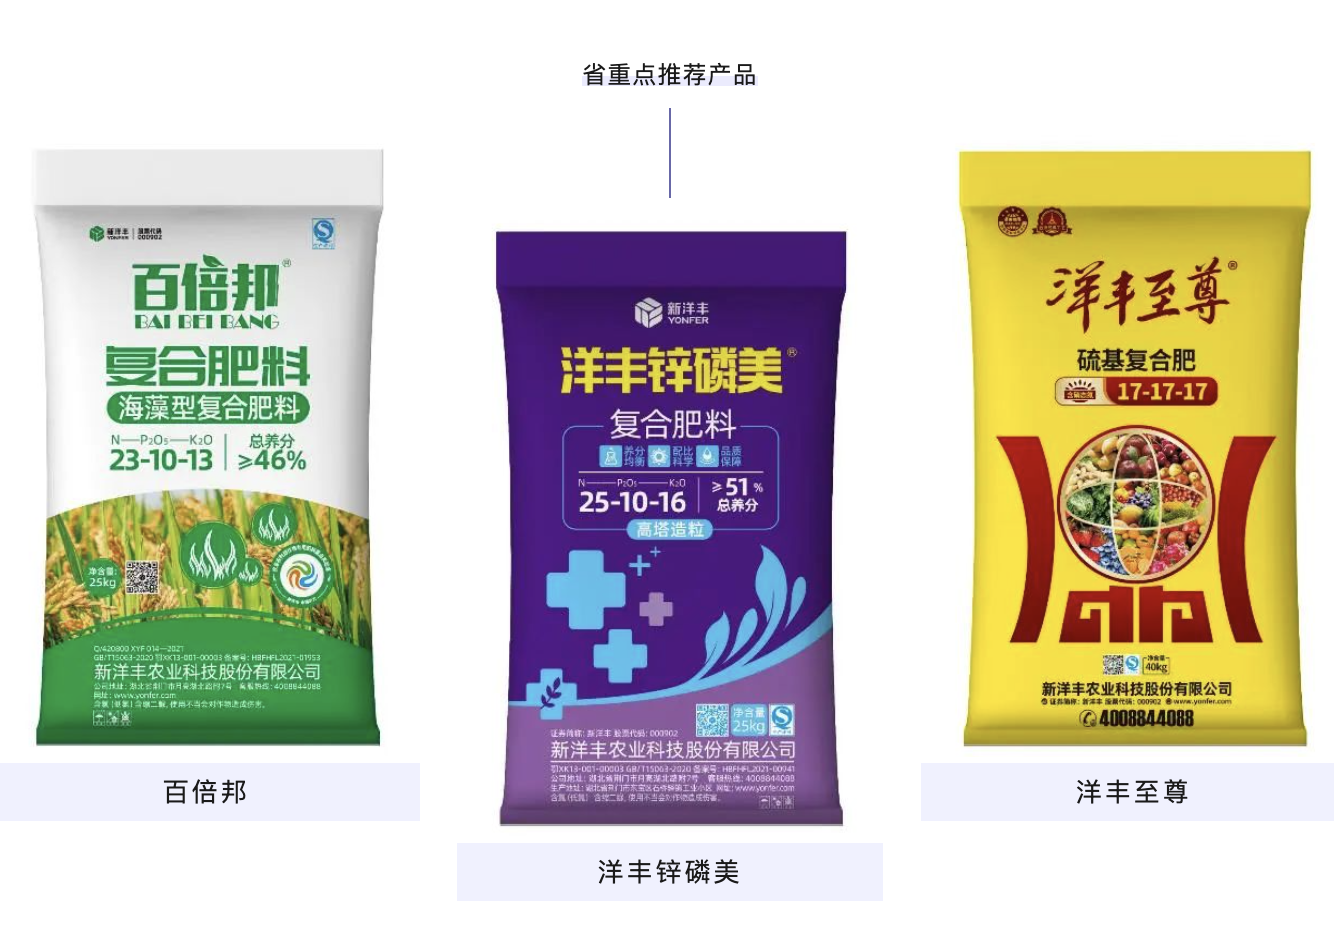 新洋丰三款产品获评湖北省重点推荐肥料产品